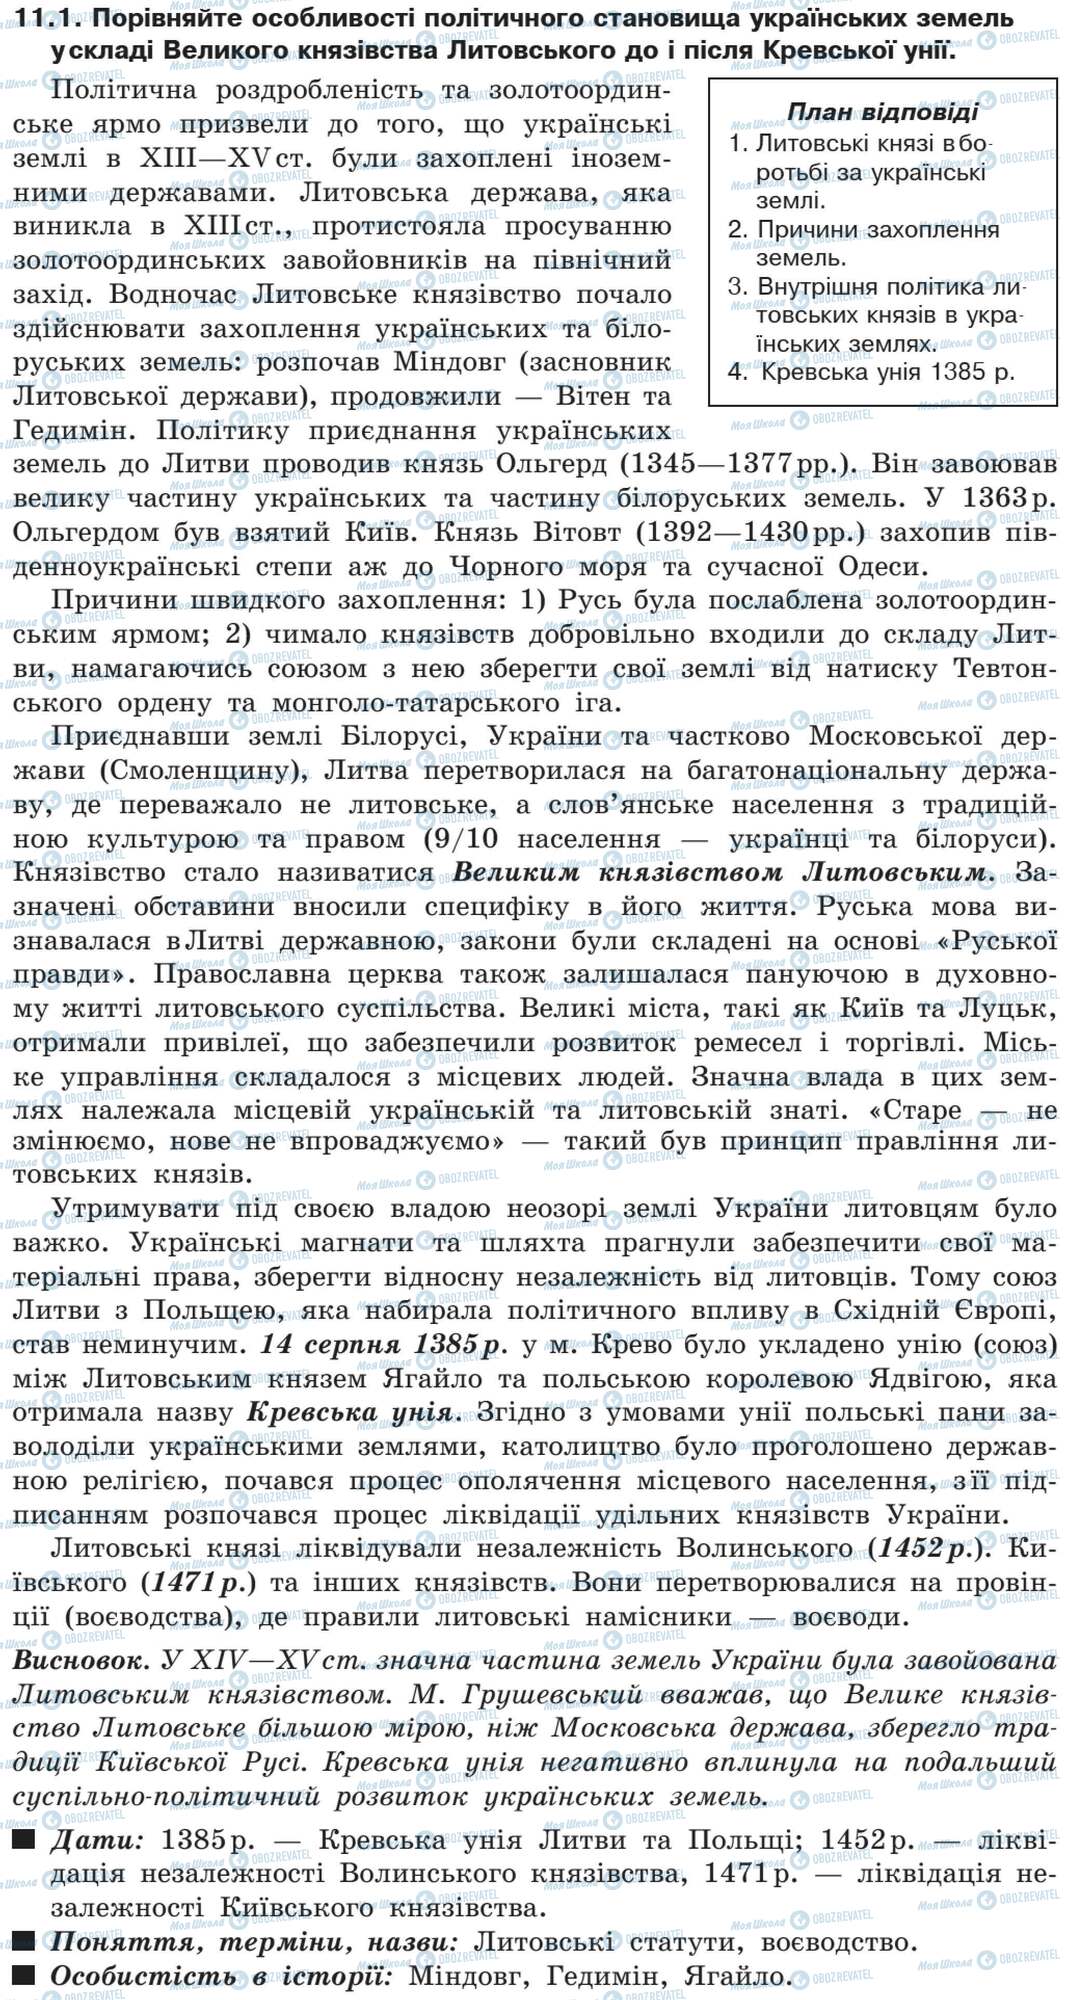 ДПА История Украины 9 класс страница 11.1